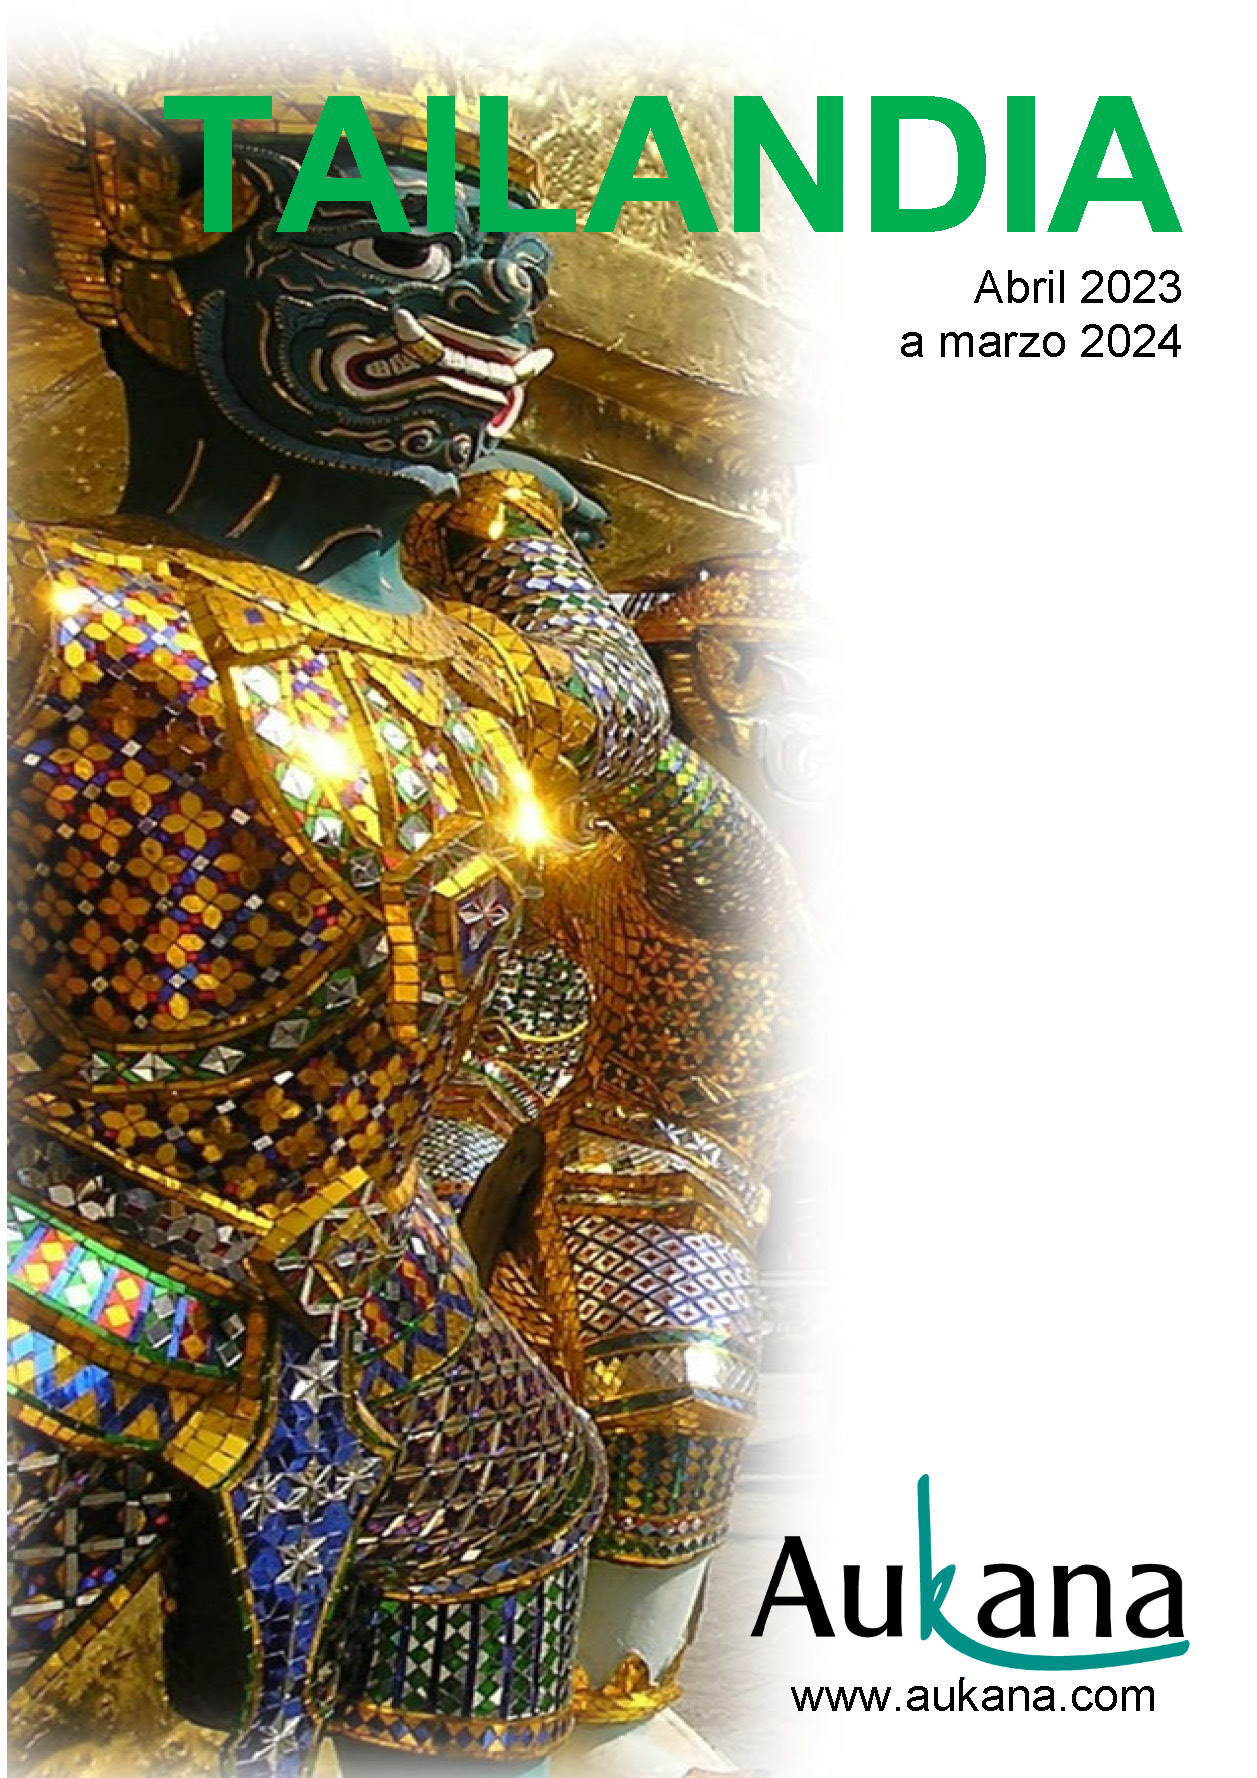 Catalogo Aukana Travel Tailandia 2023-2024